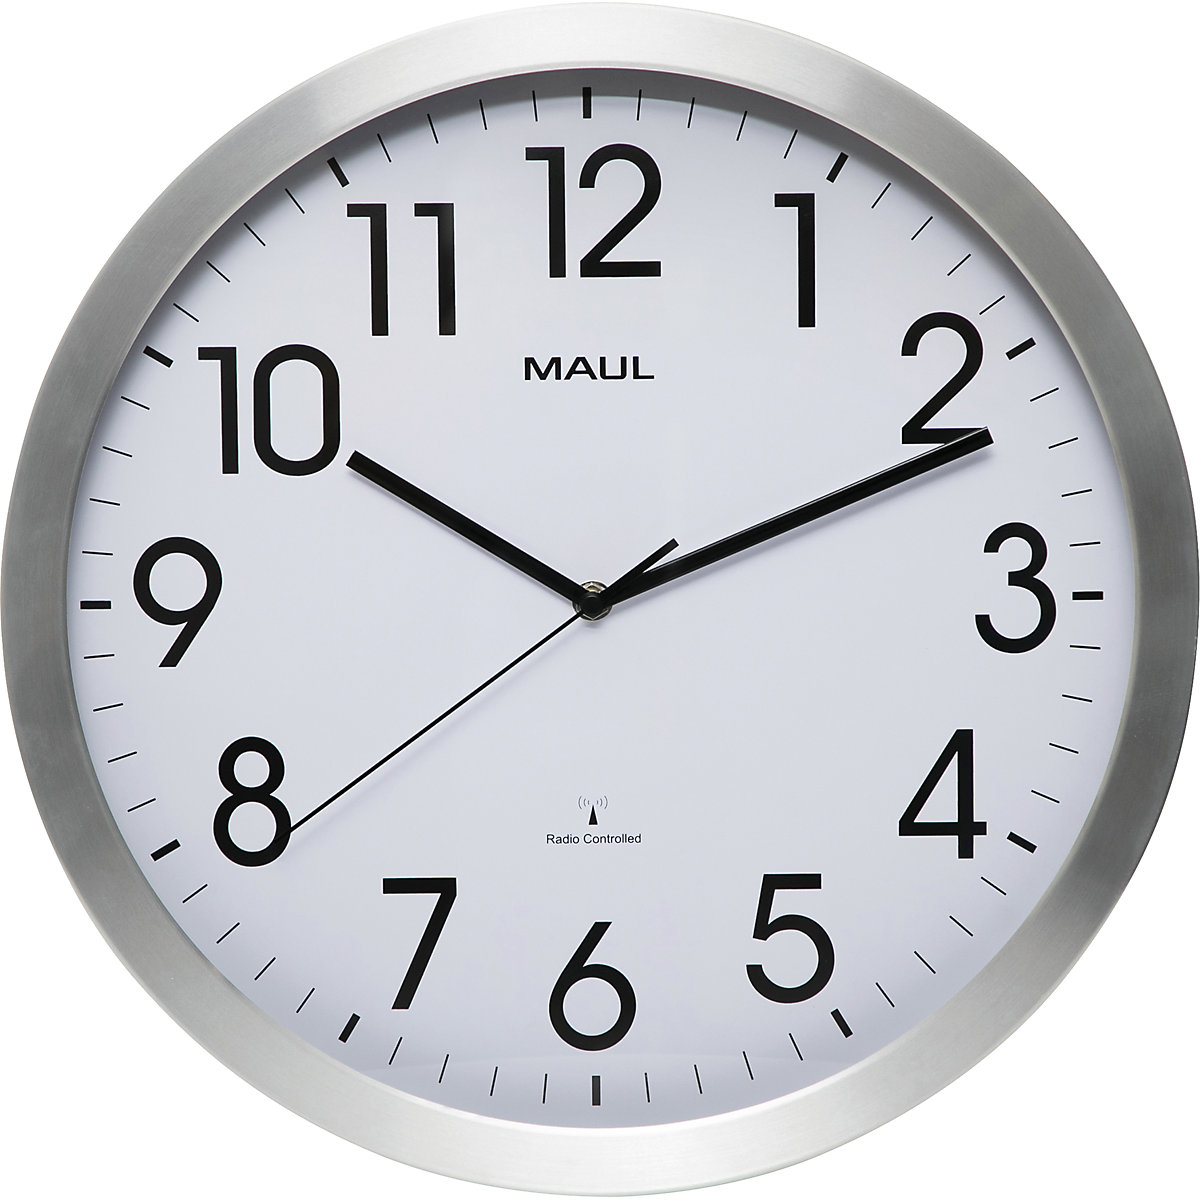 Zegar ścienny MAULmove – MAUL, aluminium szczotkowane, Ø 400 mm, mechanizm zegarowy sterowany radiem-2